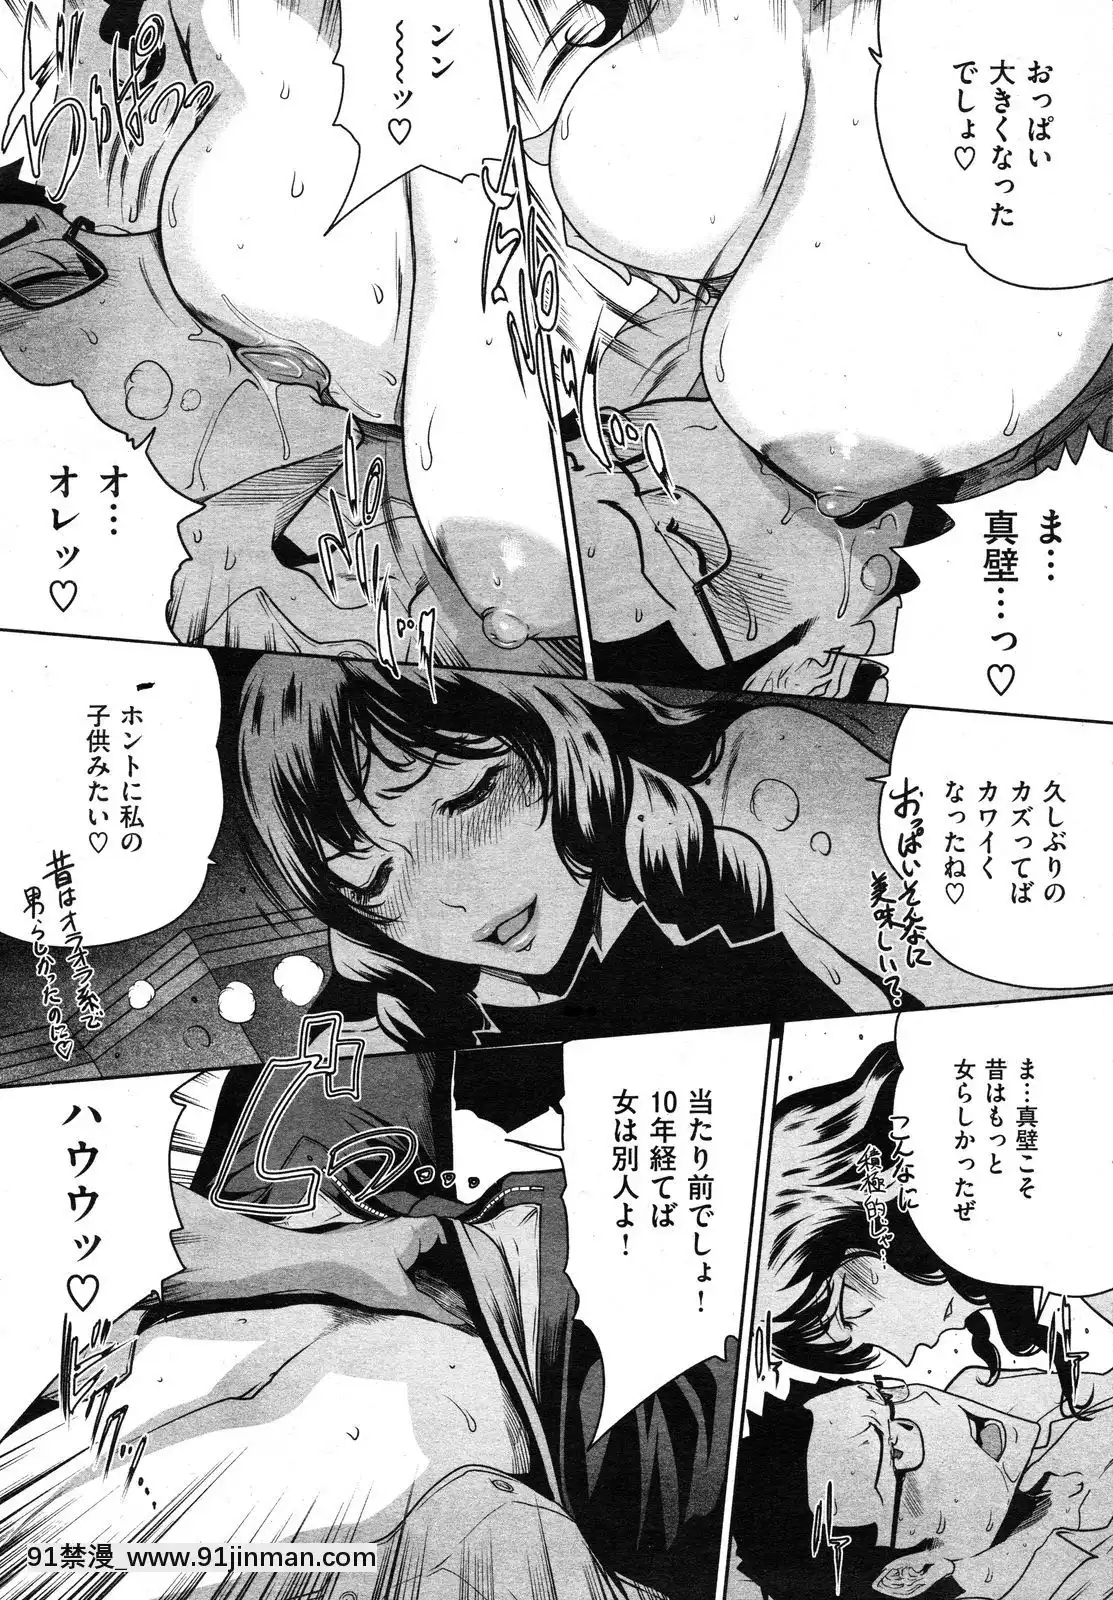 【gold of hentai】(成年コミック)[雑誌]COMIC快楽天2012年08月号   (Truyện tranh dành cho người lớn) COMIC Kairakuten số tháng 8 năm 2012